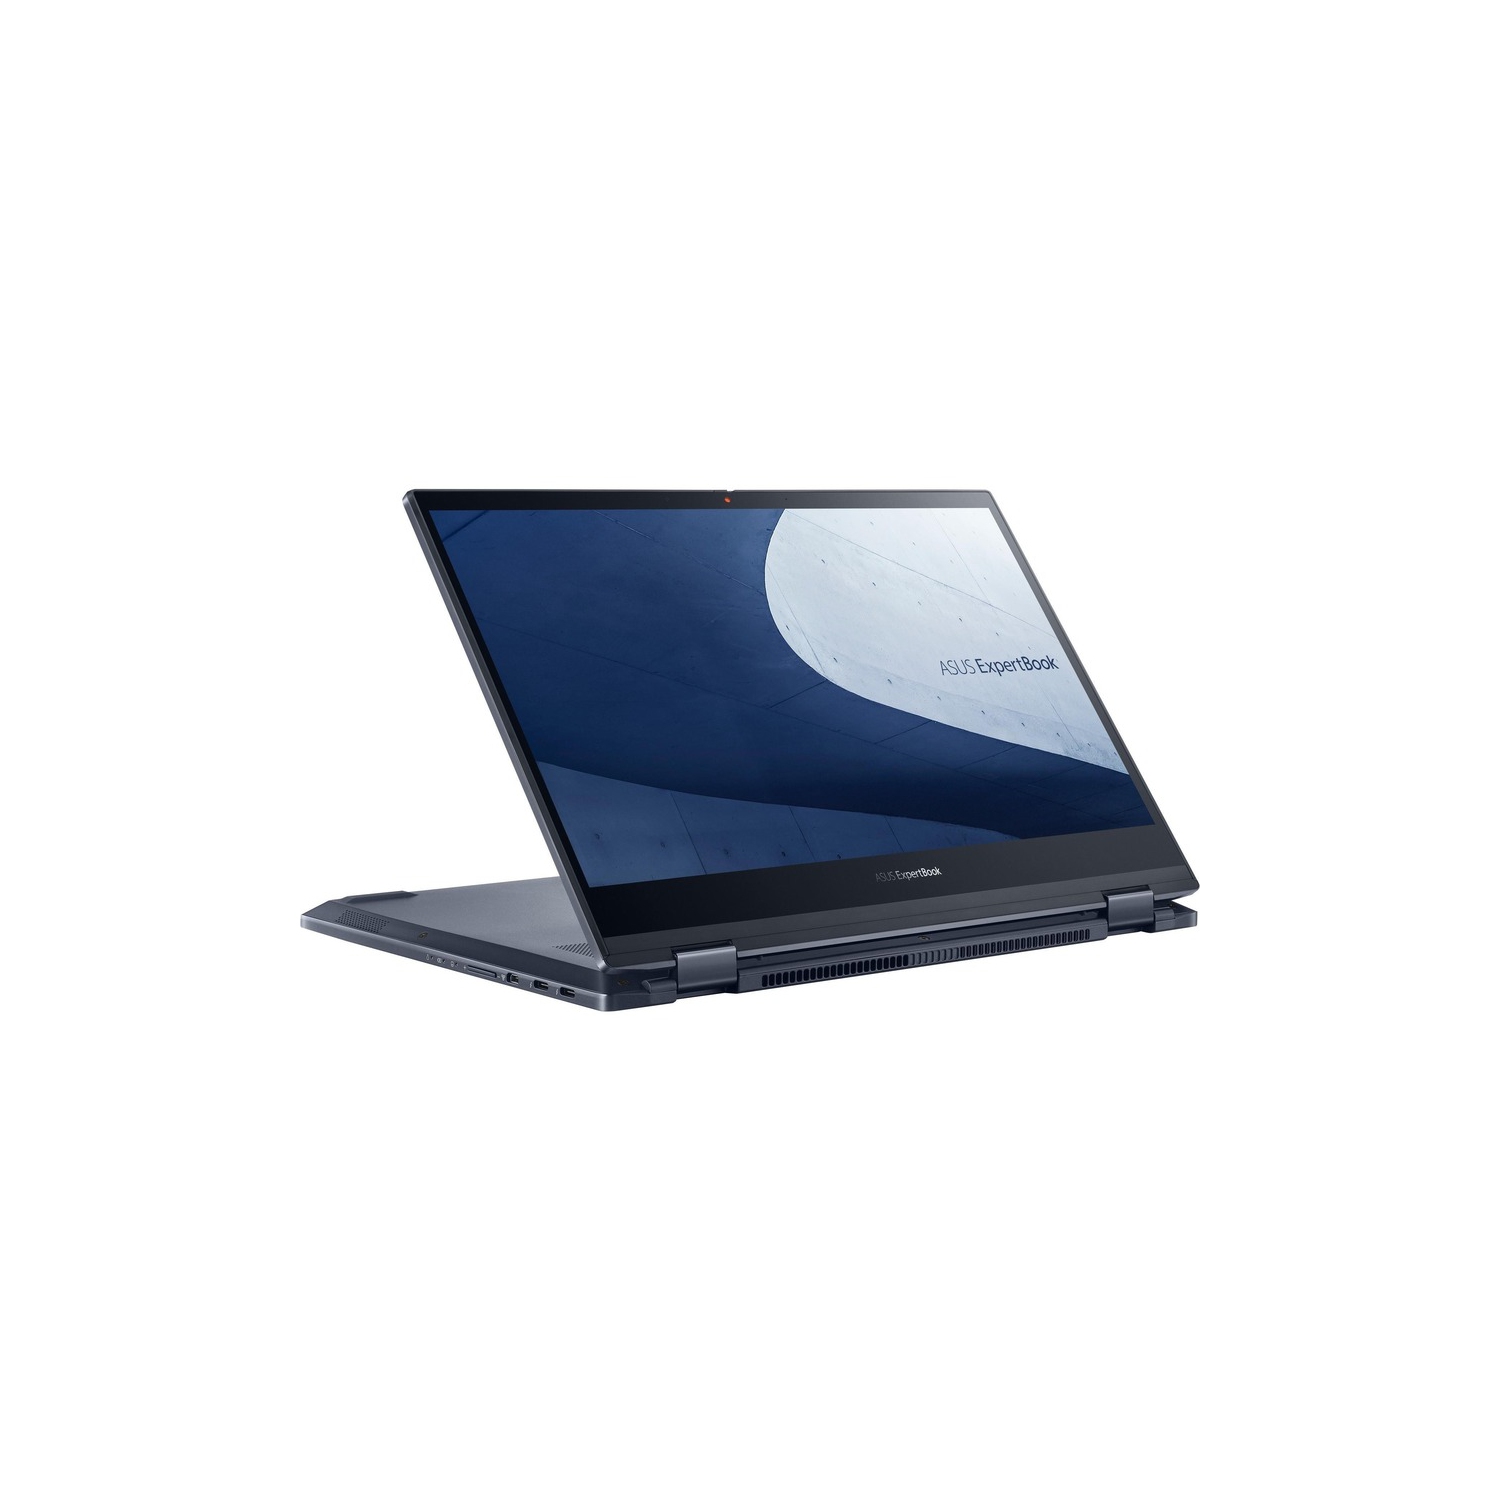 Asus ExpertBook B5 Flip 13.3" FHD Intel Core i7-1165G7 16GB RAM DDR4 512GB SSD Win 10 Pro Blue Laptop (B5302FEA-C73P-CA)